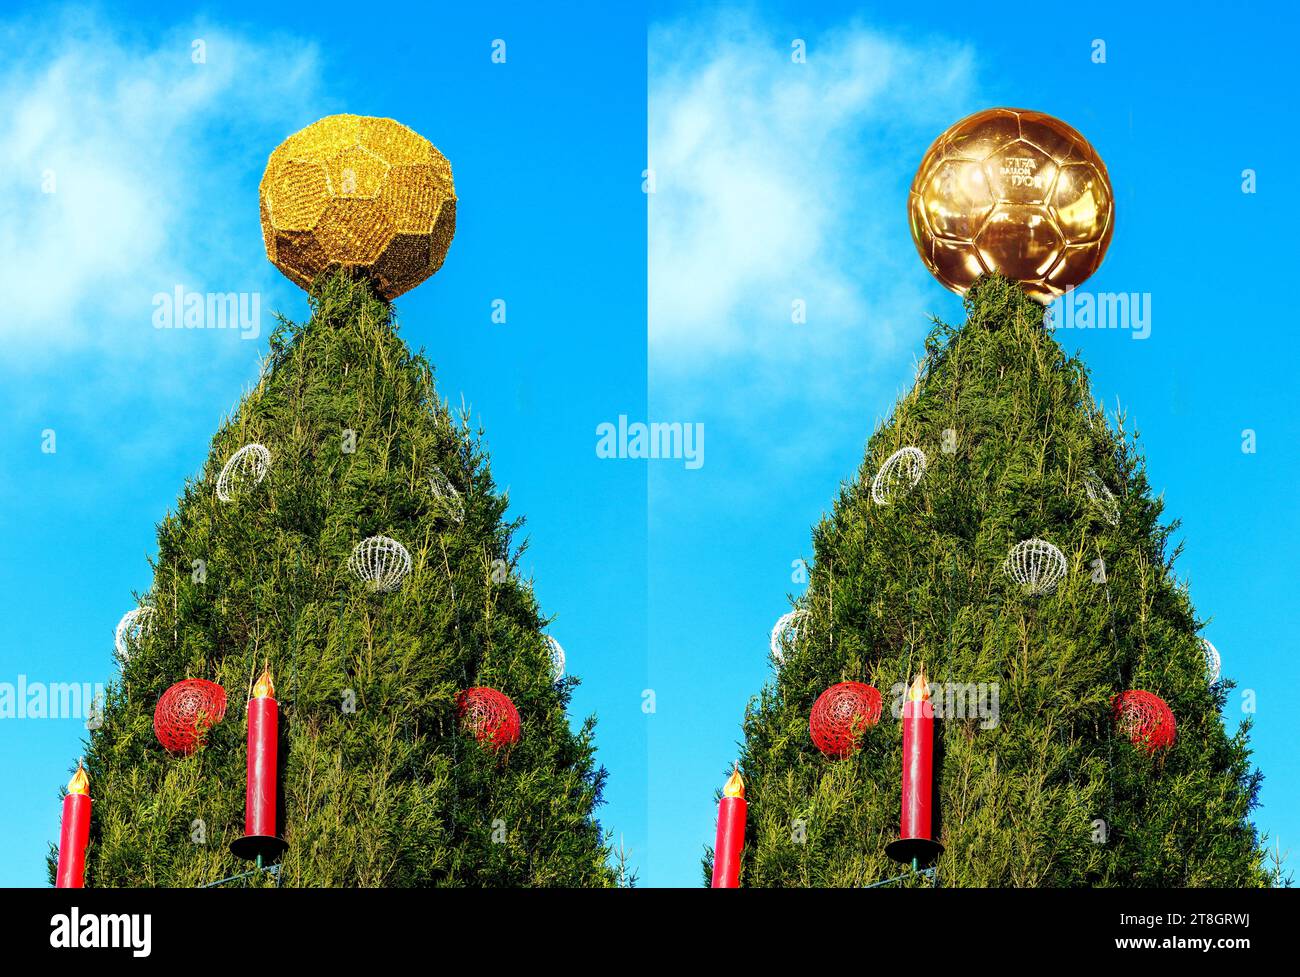 ACHTUNG: rechts Fotomontage! Dortmund, 20.11.2023: Eine goldene Kugel krönt den welweit größten Weihnachsbaum auf dem Dortmunder Weihnachtsmarkt. Das Aussehen ähnelt dem 'Ballon d´Or', mit dem die FIFA den Fußballspieler des Jahres auszeichnet. Der Baum ist 45 Meter hoch, besteht aus 1700 Rotfichten aus dem Sauerland und ist mit 48.000 LED-Lichtern behängt. Die Kugel auf der Spitze ähnelt einem Fußball und wird deshalb als geschmacklos und zu Weihnachten unpassend kritisiert. Stock Photo